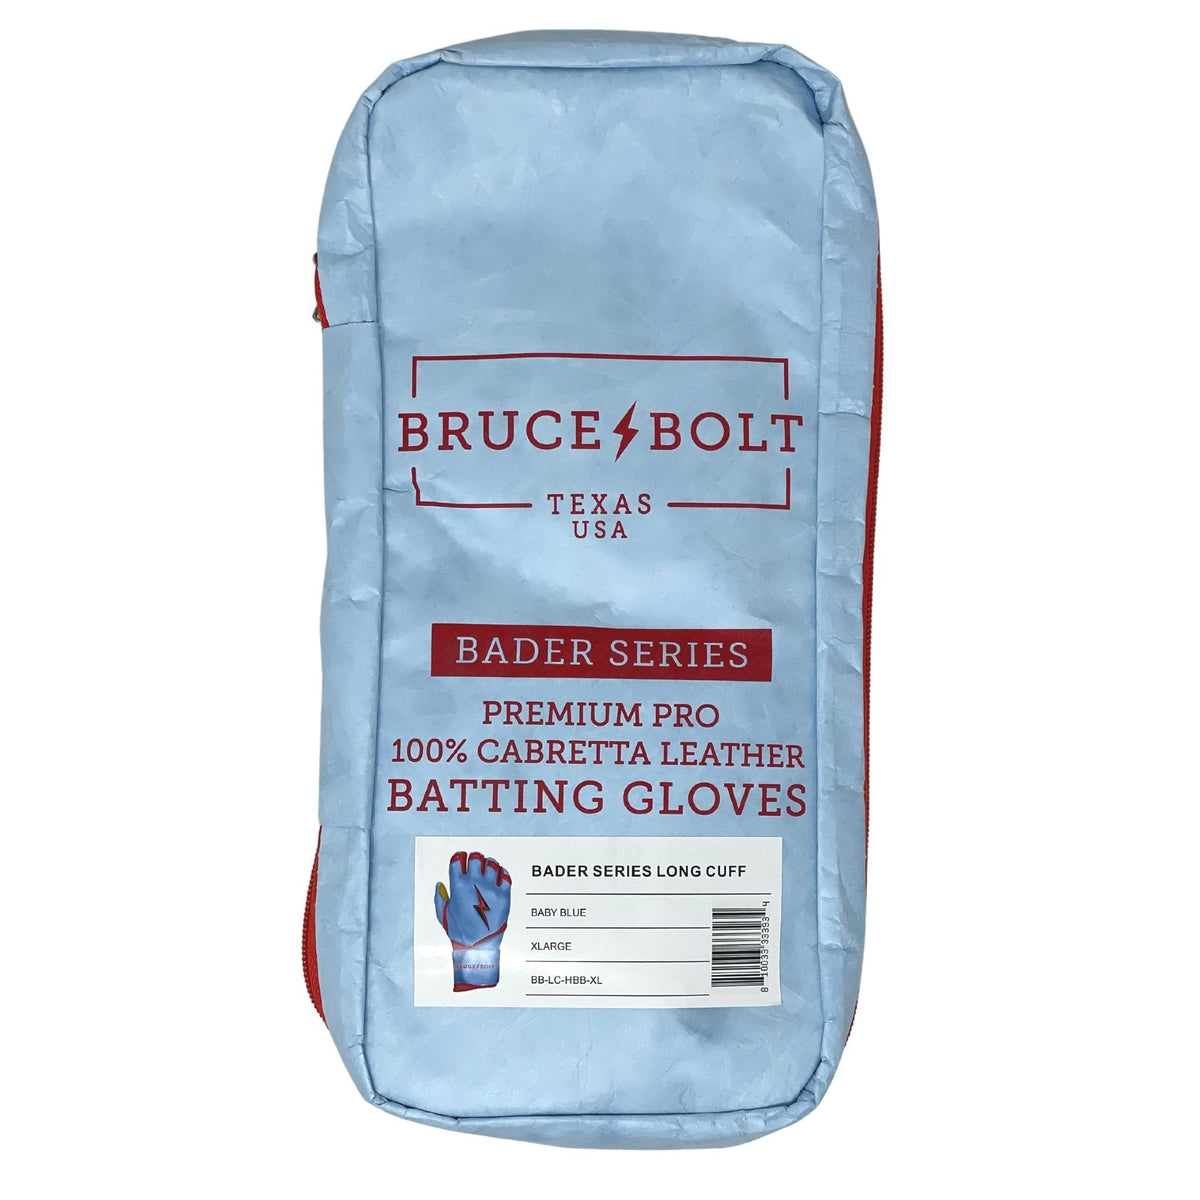 Pink Batting Gloves  Harrison Bader Batting Gloves – BRUCE BOLT